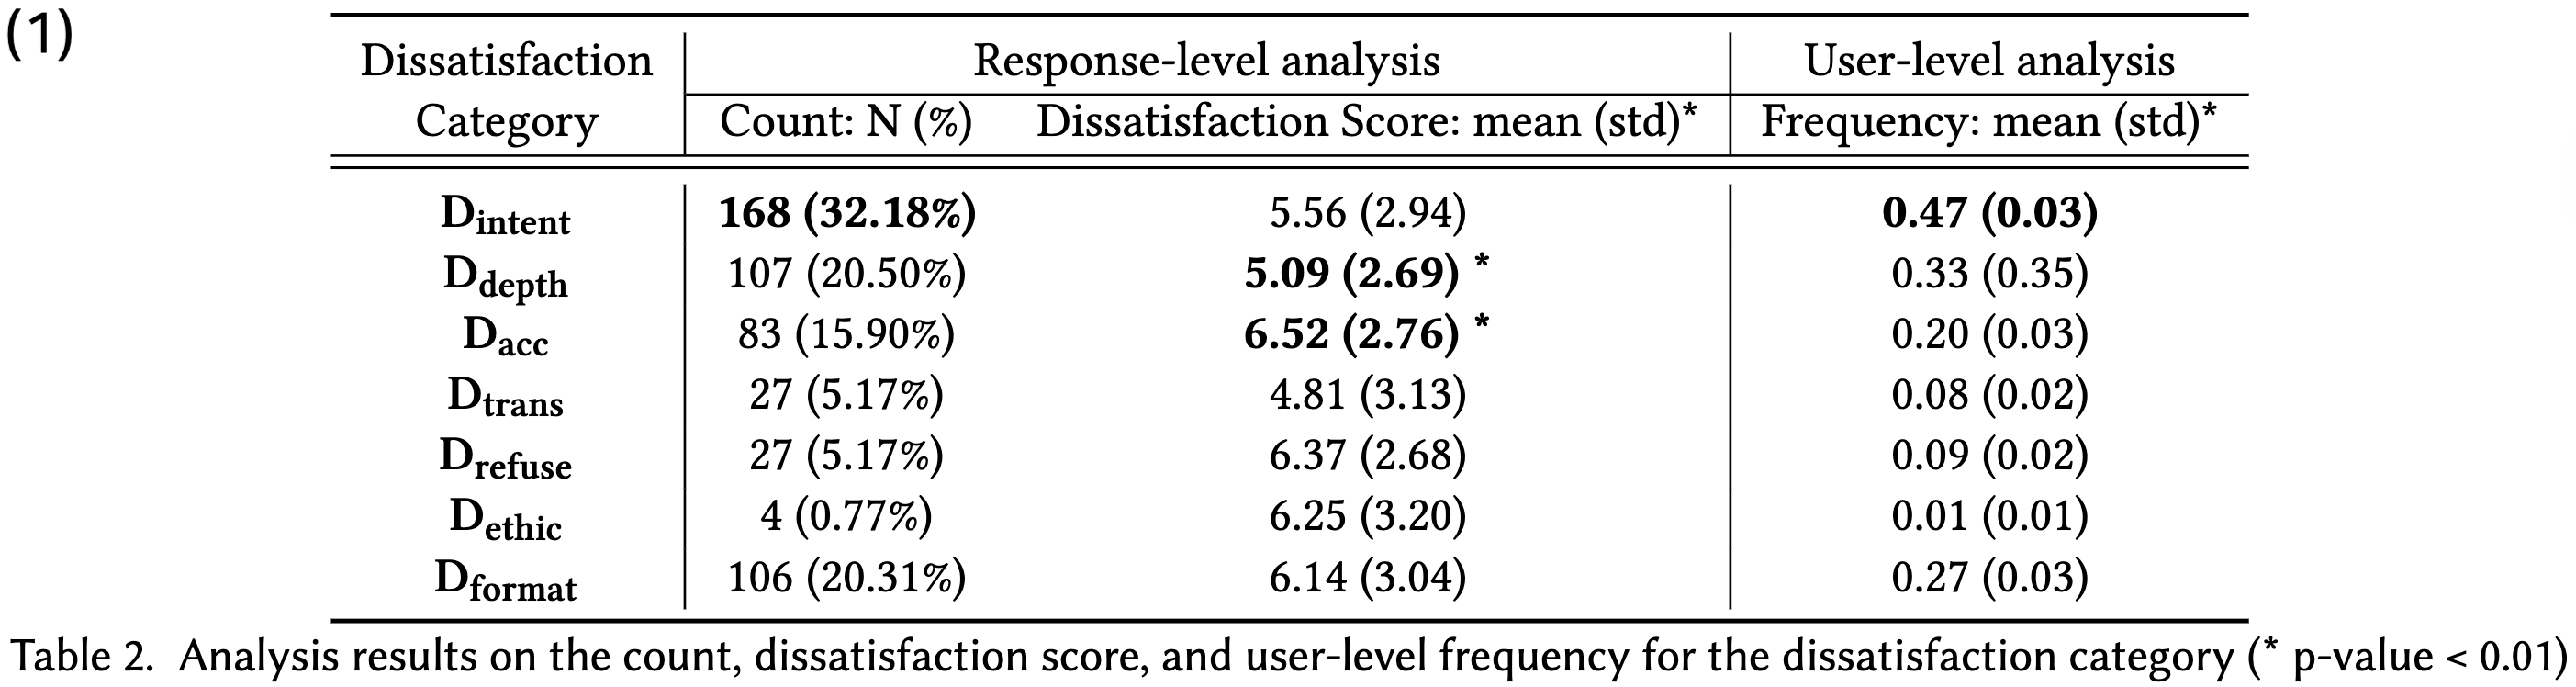 Dissatisfaction Analysis Table